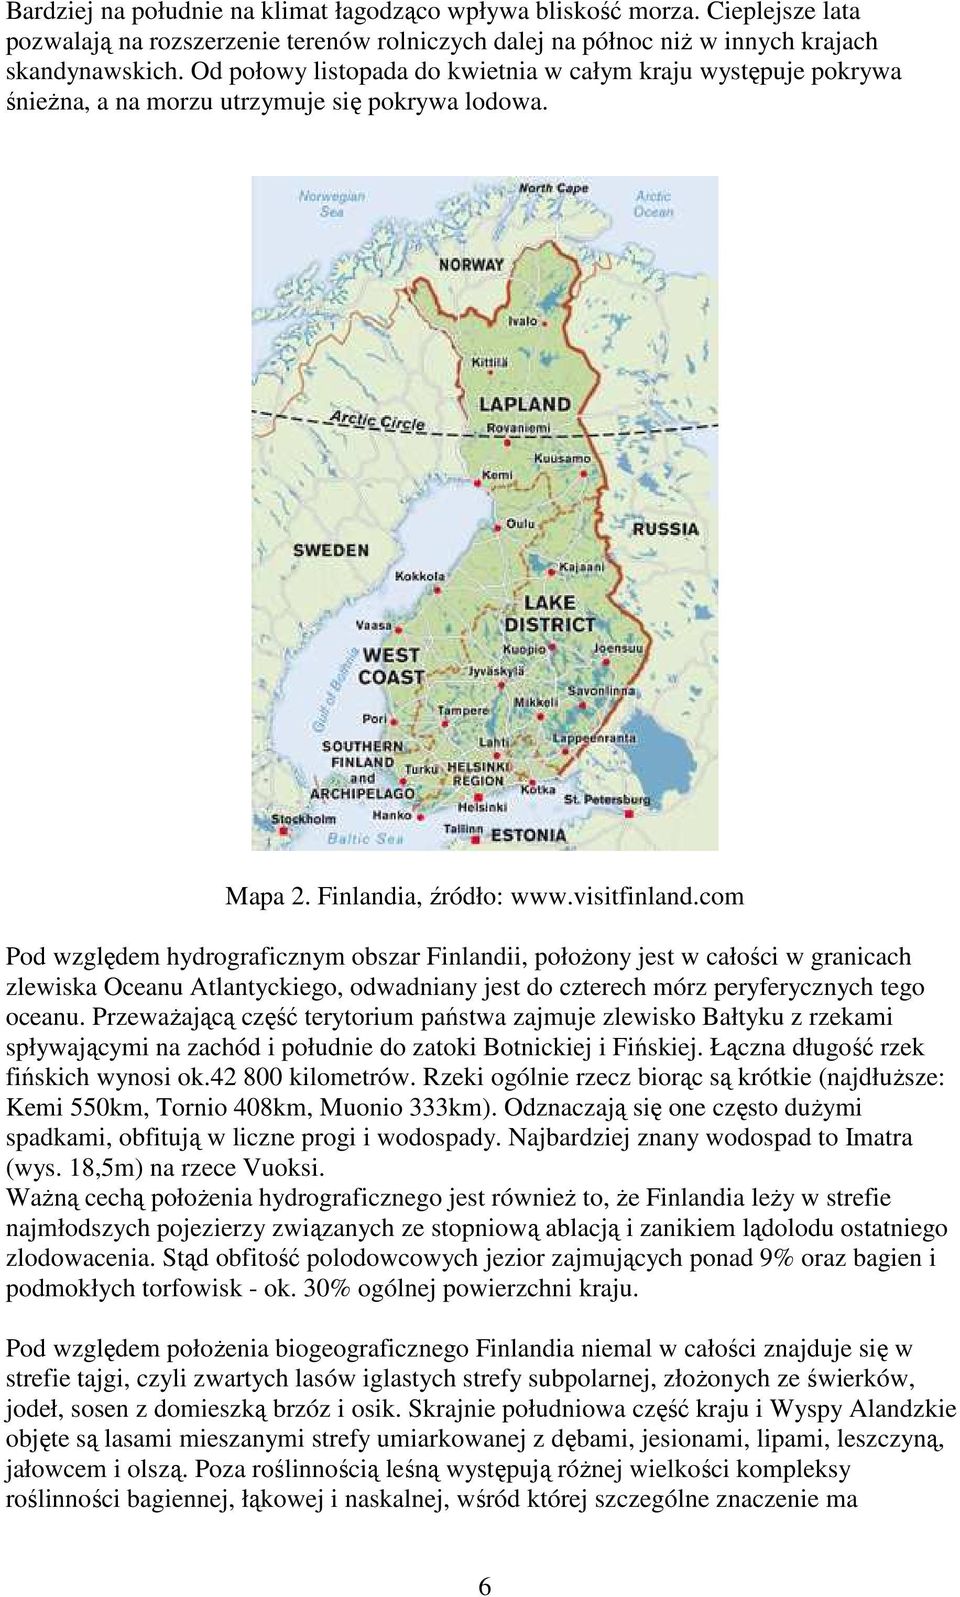 com Pod względem hydrograficznym obszar Finlandii, połoŝony jest w całości w granicach zlewiska Oceanu Atlantyckiego, odwadniany jest do czterech mórz peryferycznych tego oceanu.